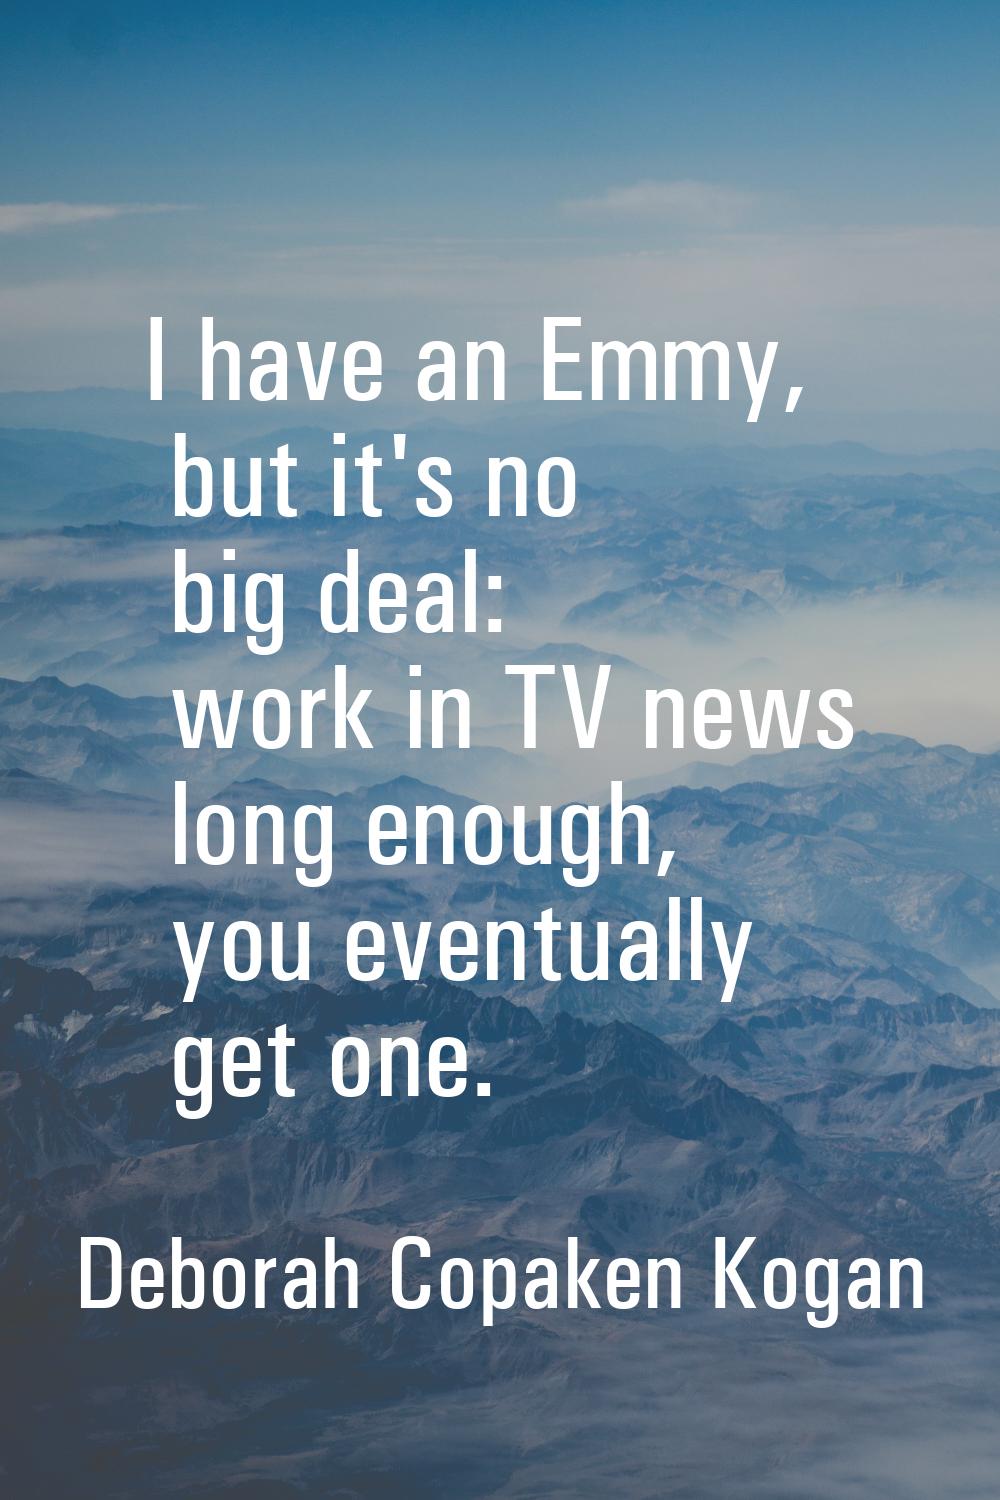 I have an Emmy, but it's no big deal: work in TV news long enough, you eventually get one.